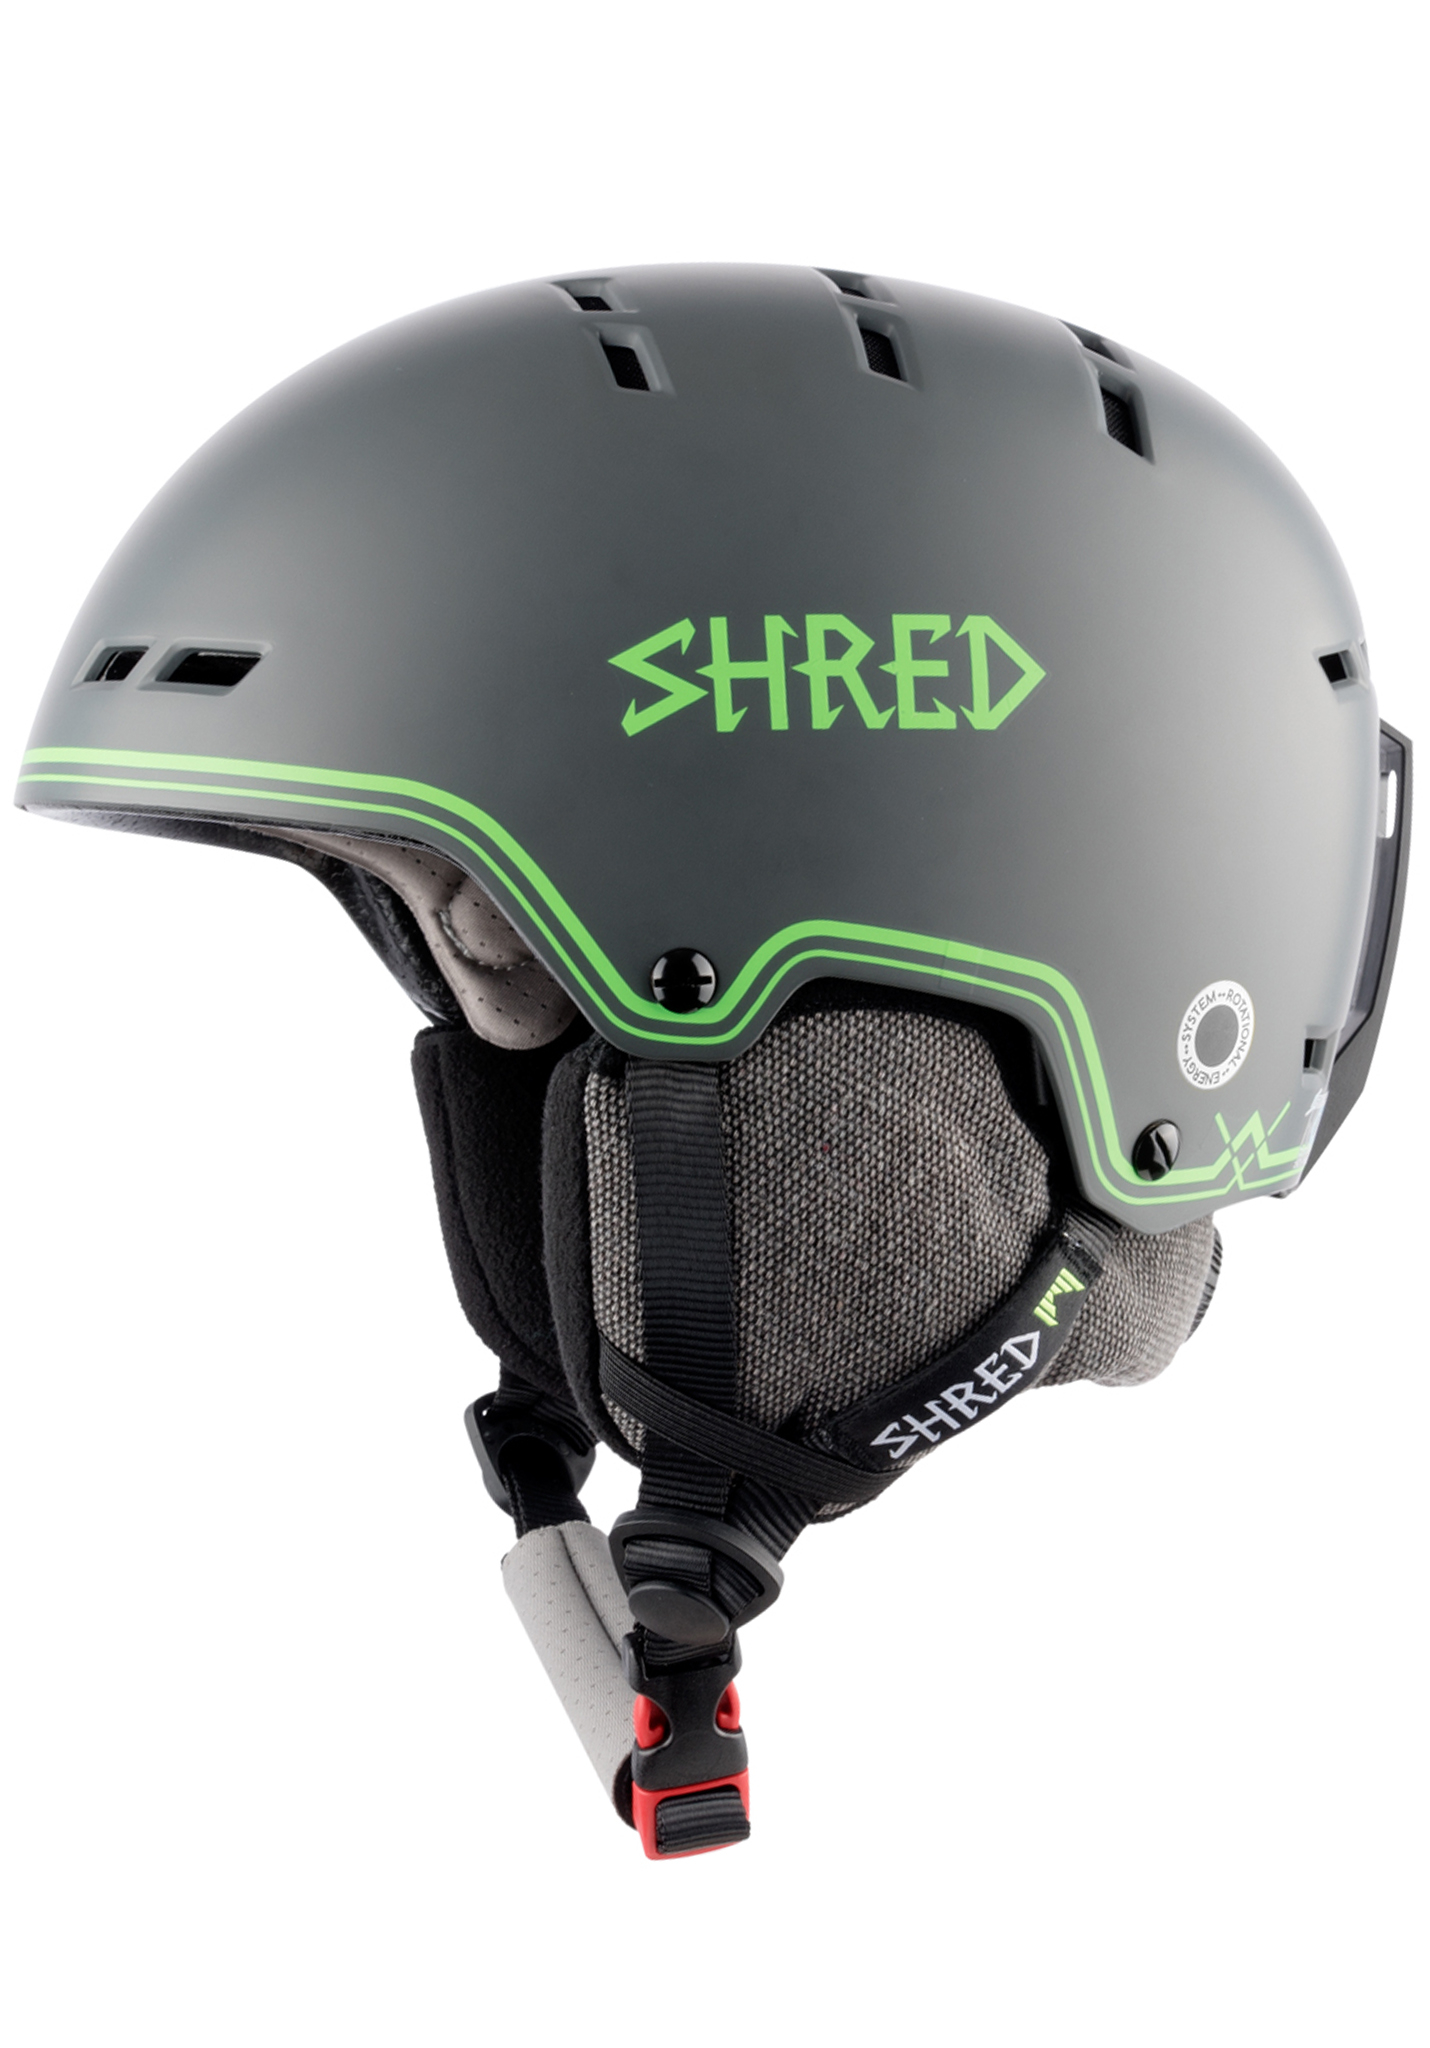 Shred Bumper NoShock Snowboardhelme grey/green/grey L